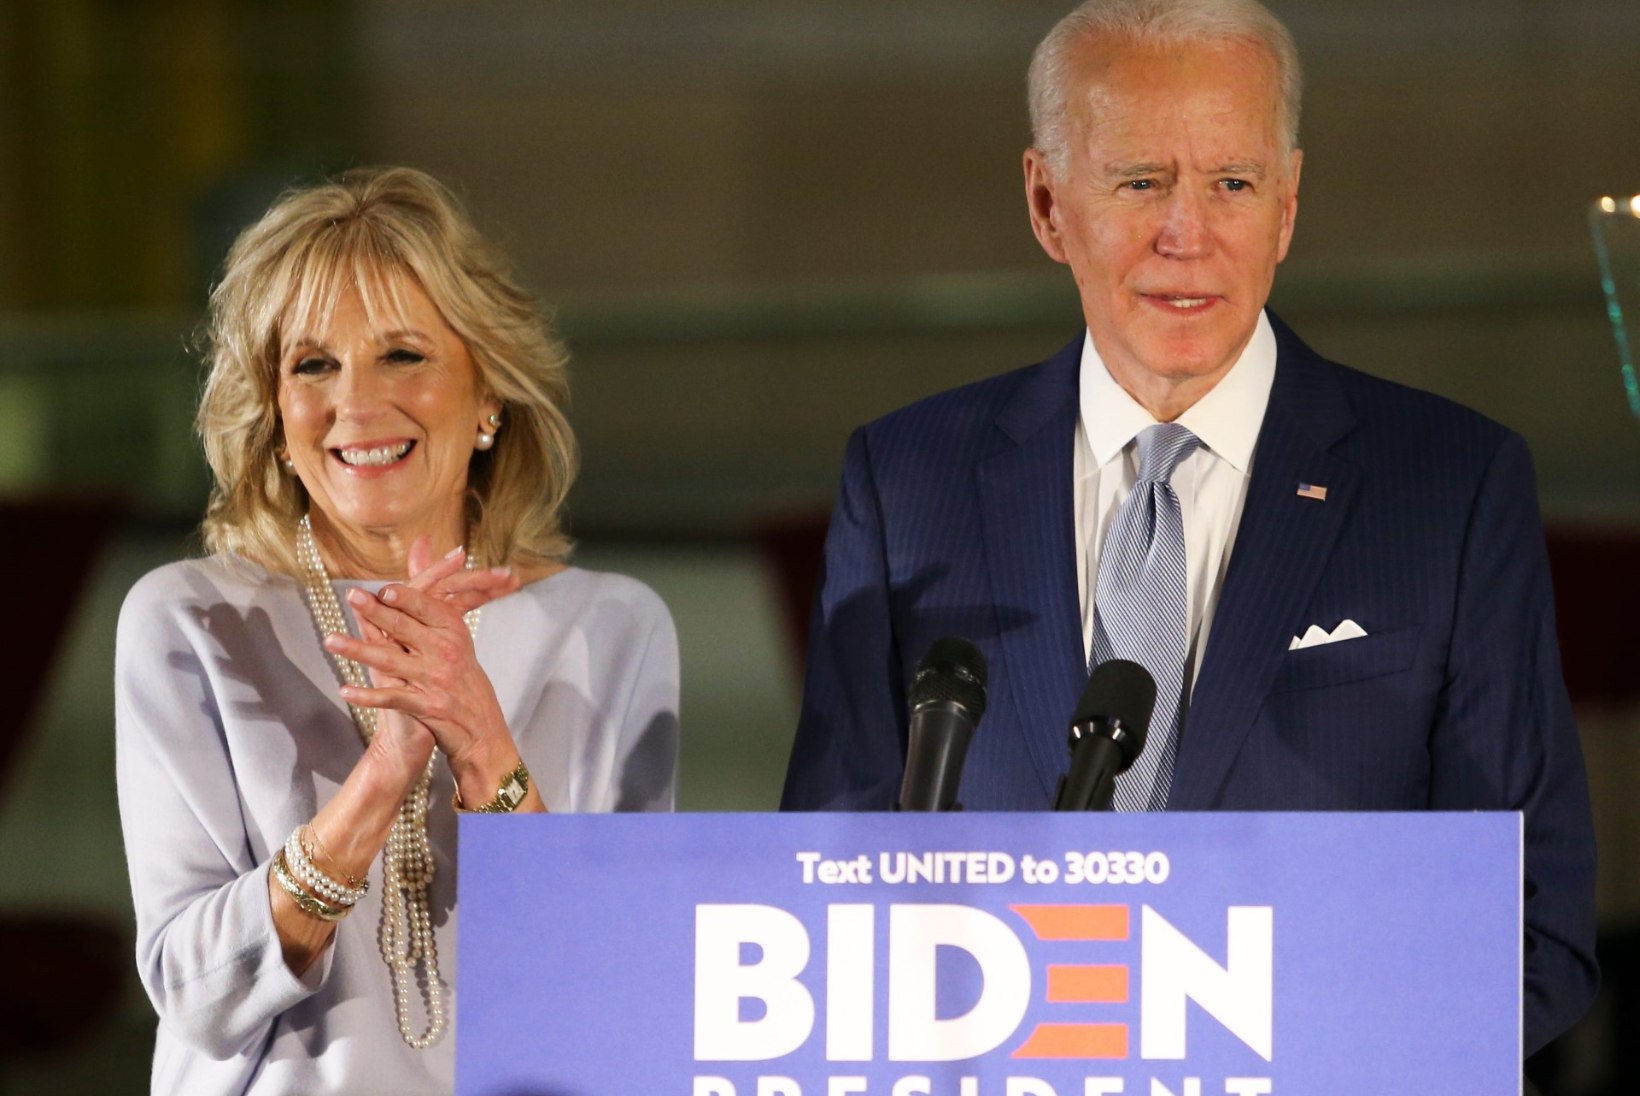 Joe Biden esimese abikaasa hukkumisest: soovisin juhuslikust noahoobist surra ja kaalusin tõsiselt poliitikukarjäärist loobumist